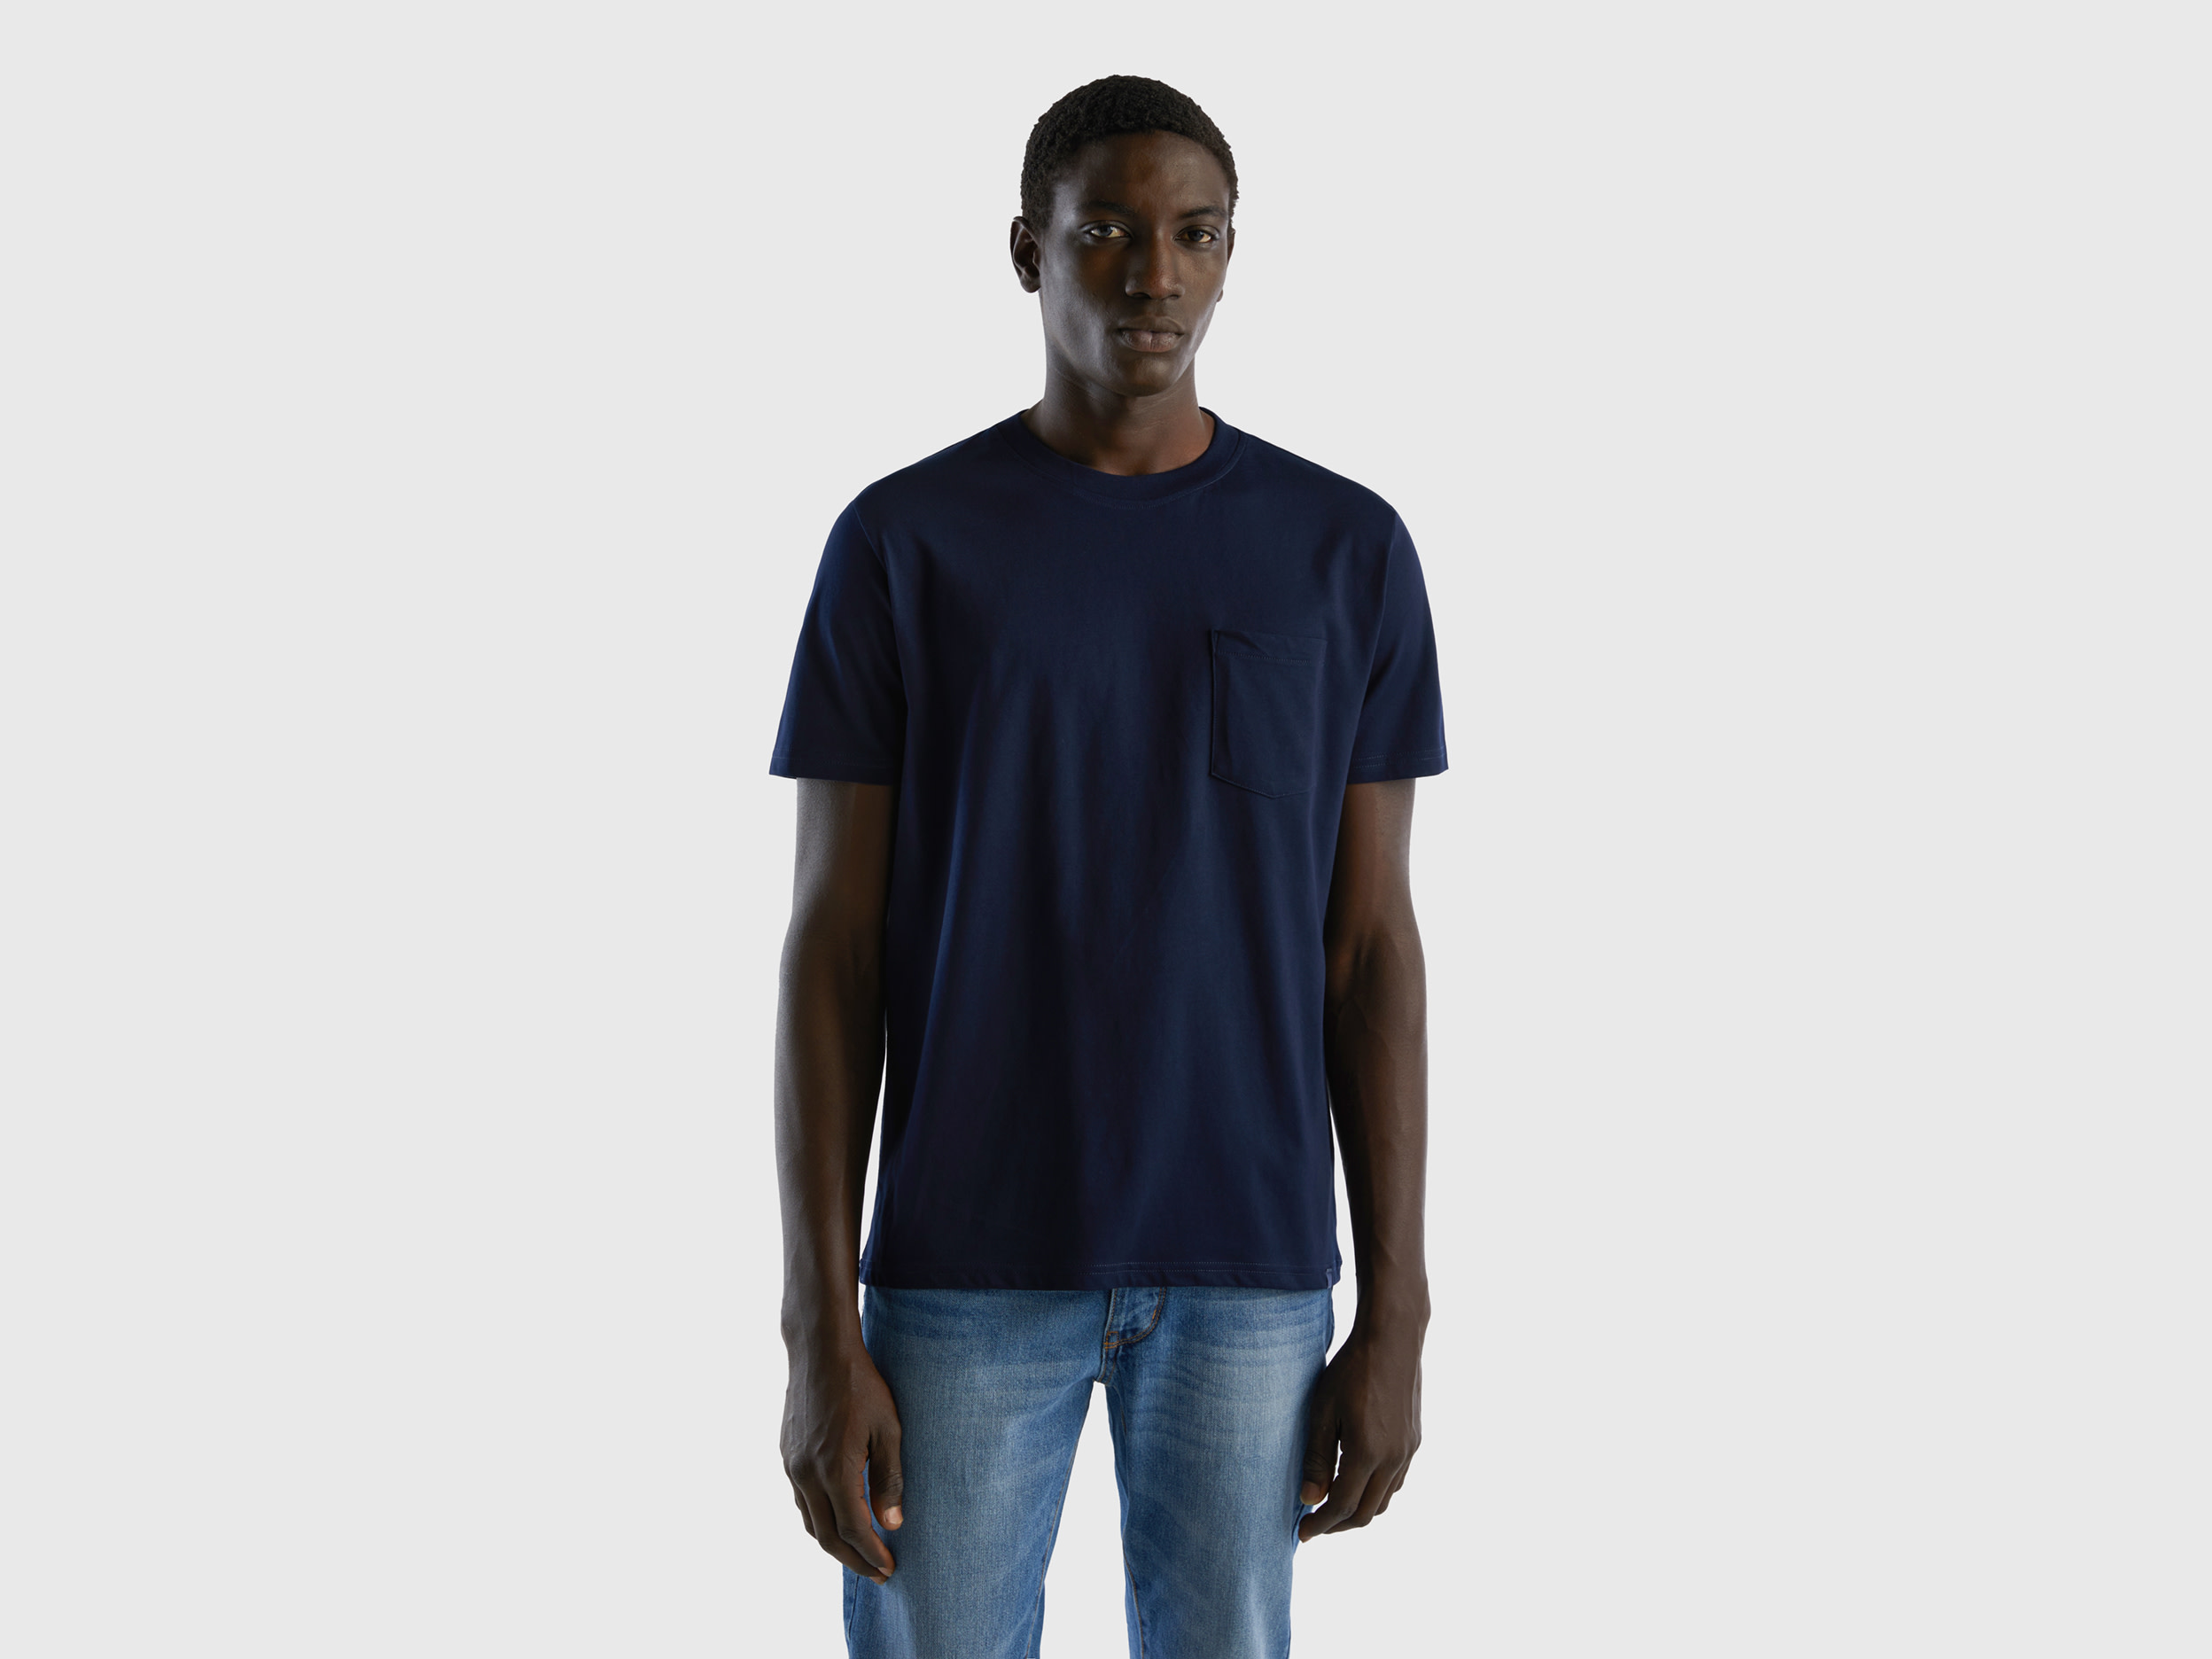 Benetton, 100% Cotton T-shirt With Pocket, size XXL, Dark Blue, Men